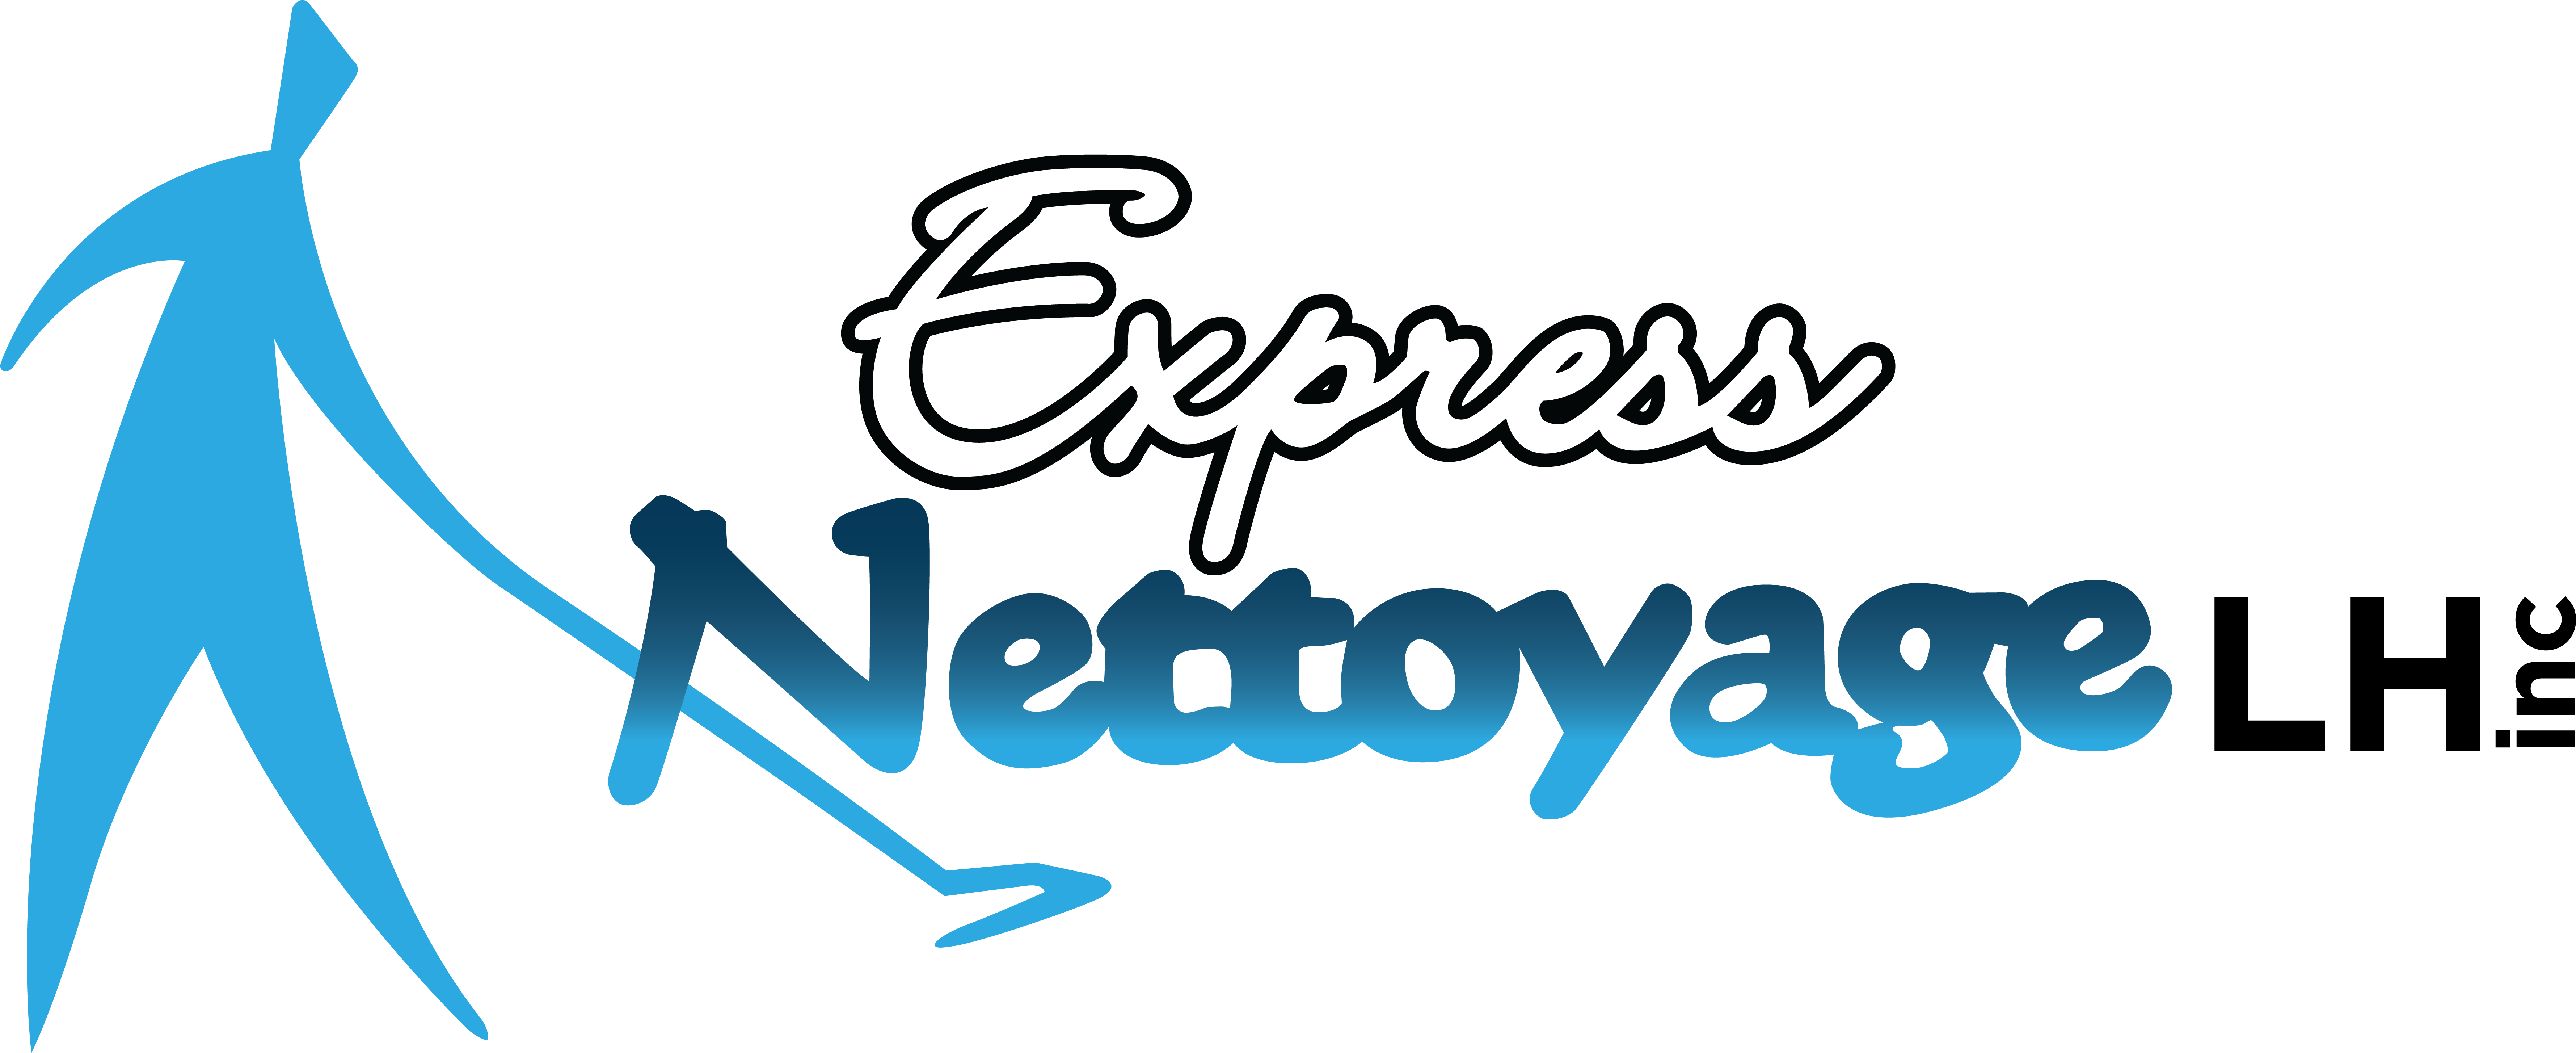 Express Nettoyage